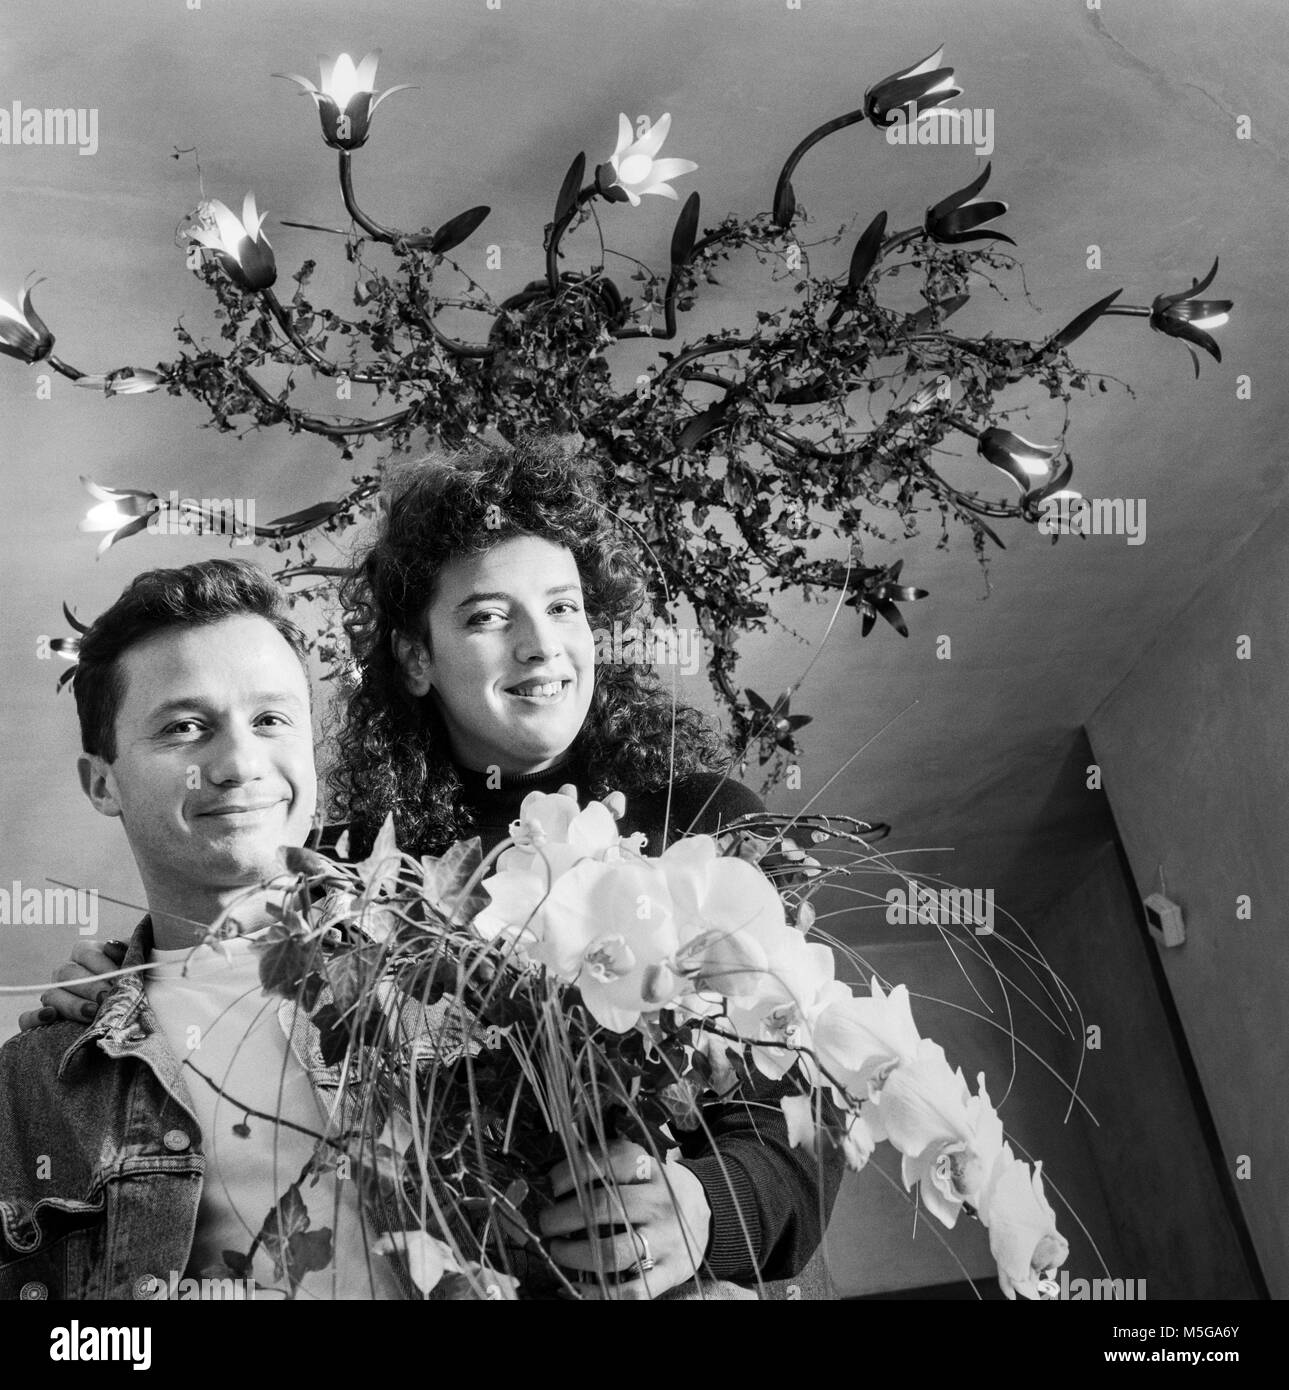 Jacque Azagury e Jane Cullinan nel negozio di fioristi Azageury Fleurs, archiviazione fotografia fatta il 25 ottobre 1989 Foto Stock